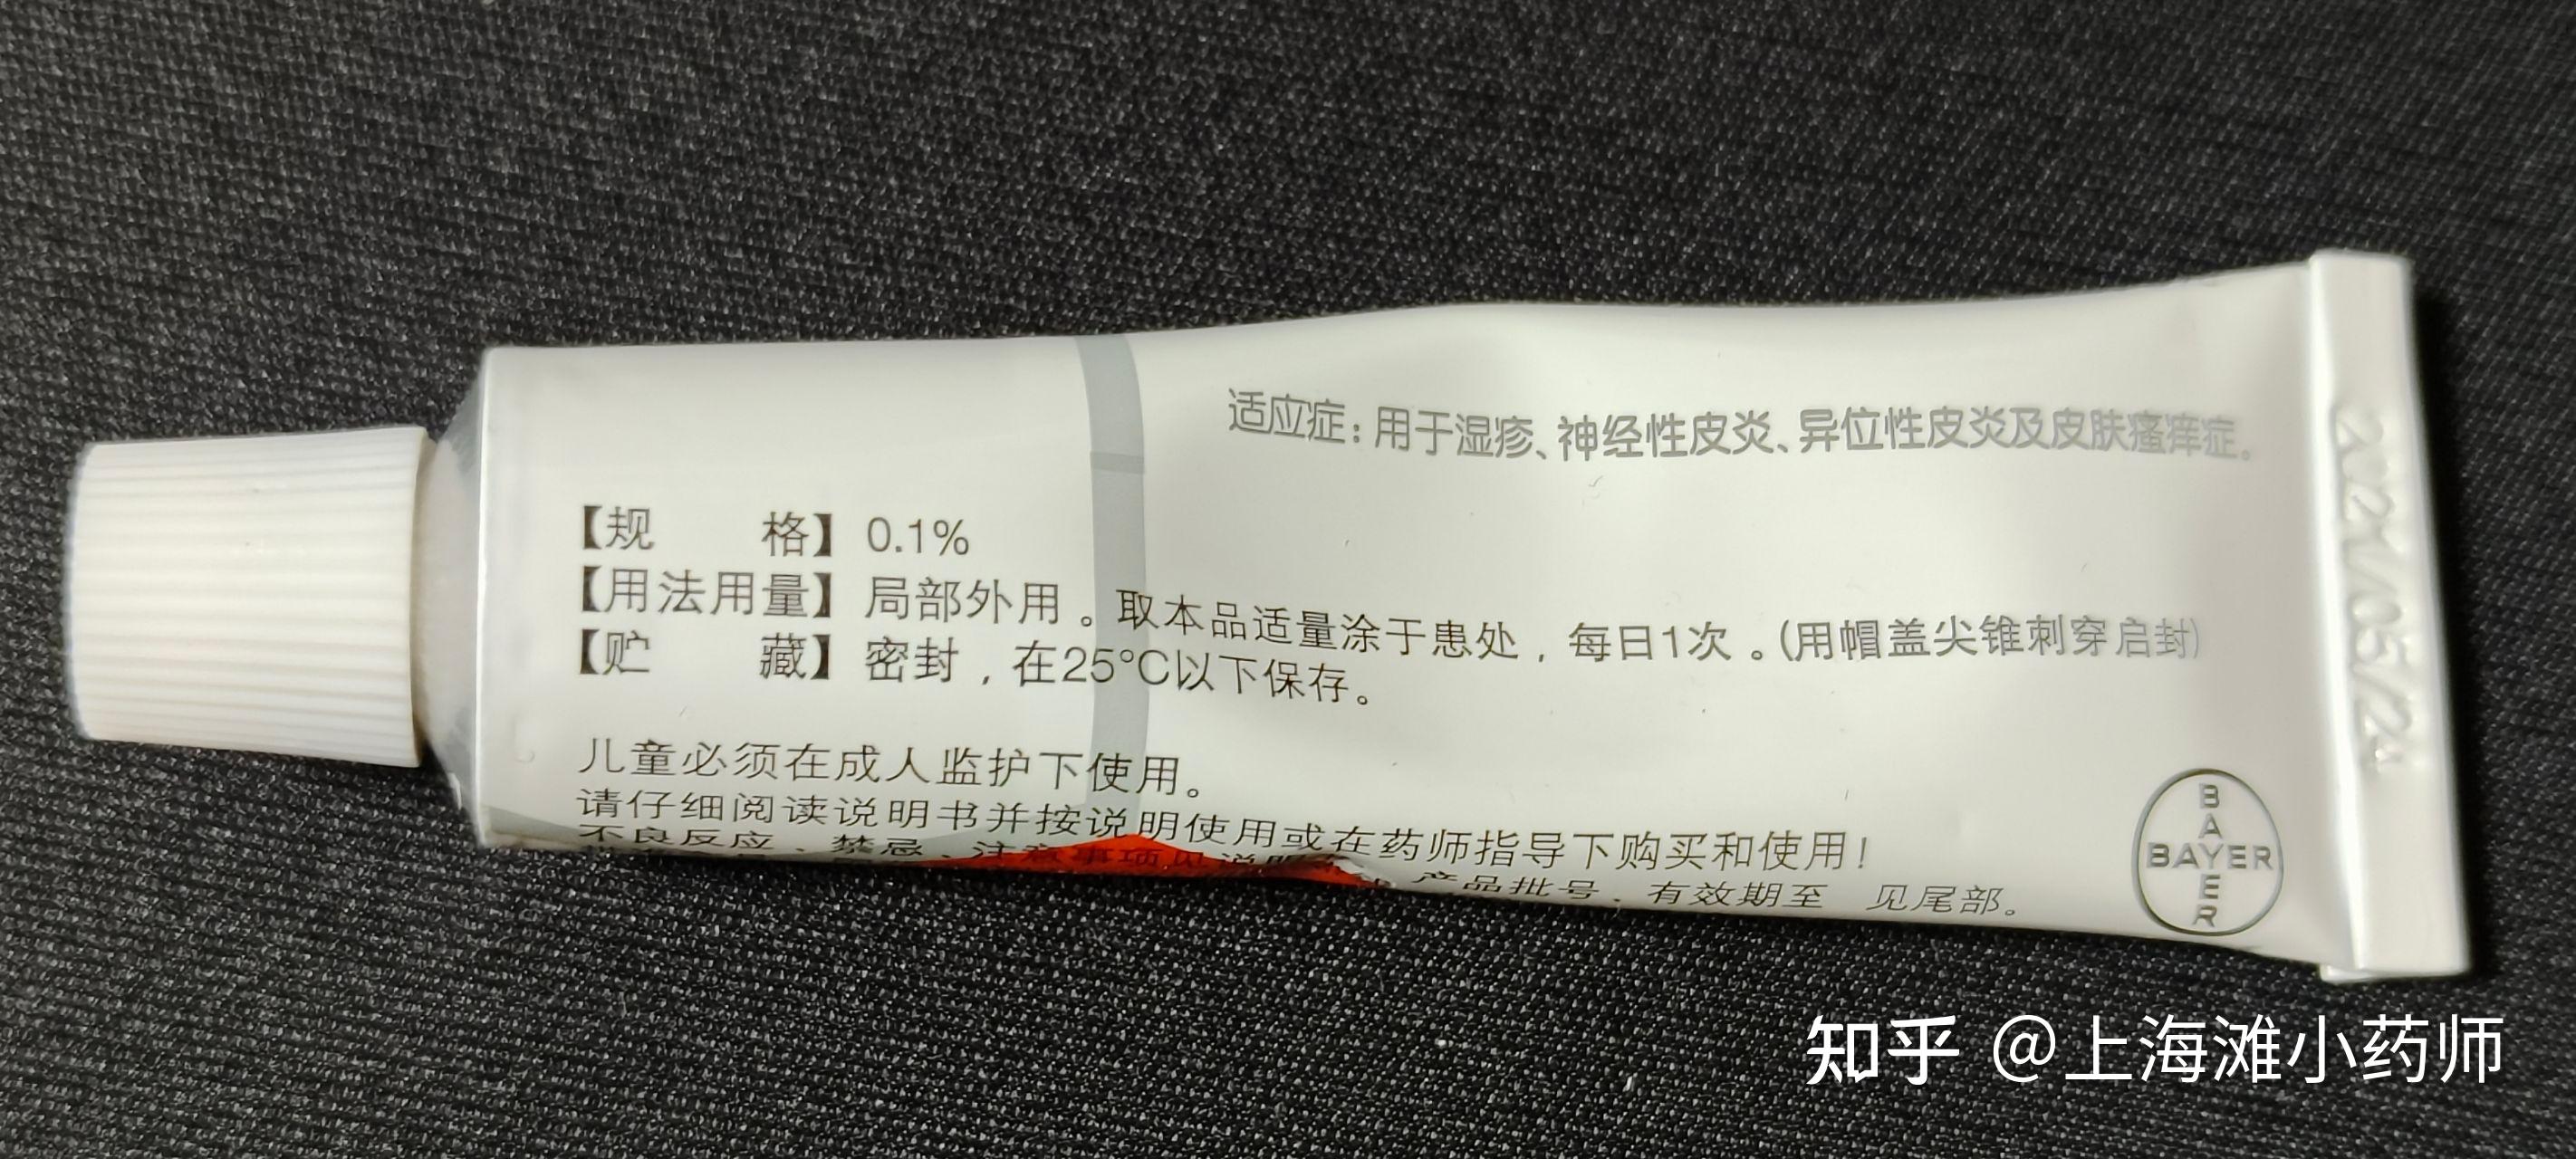 糠酸莫米松乳膏_上海通用药业股份有限公司-药源网